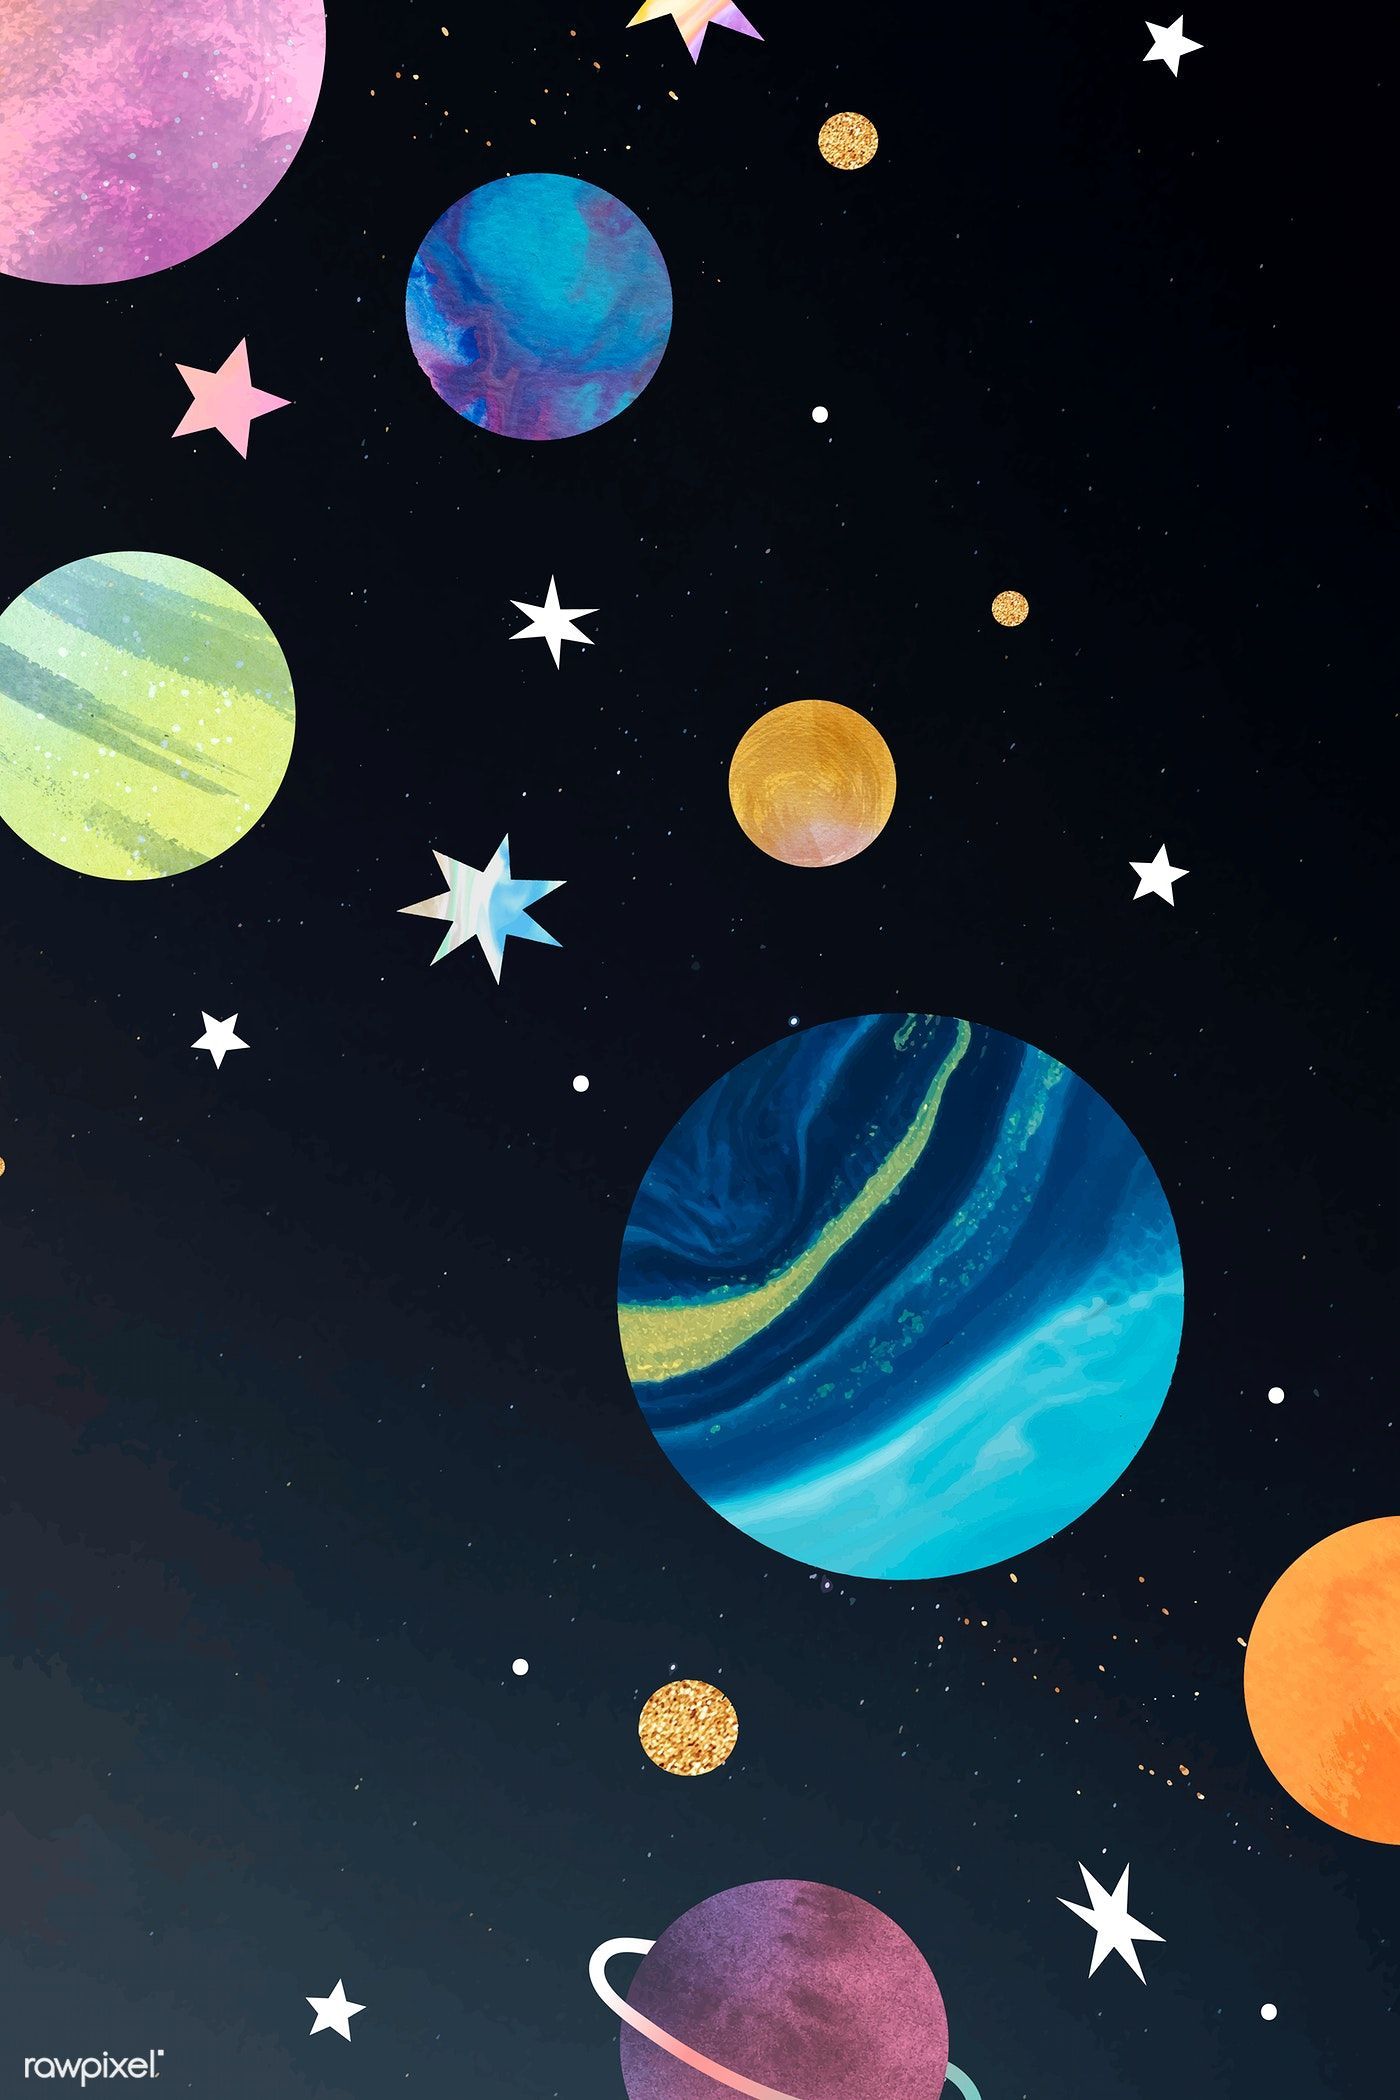 Download premium vector of Colorful galaxy watercolor doodle